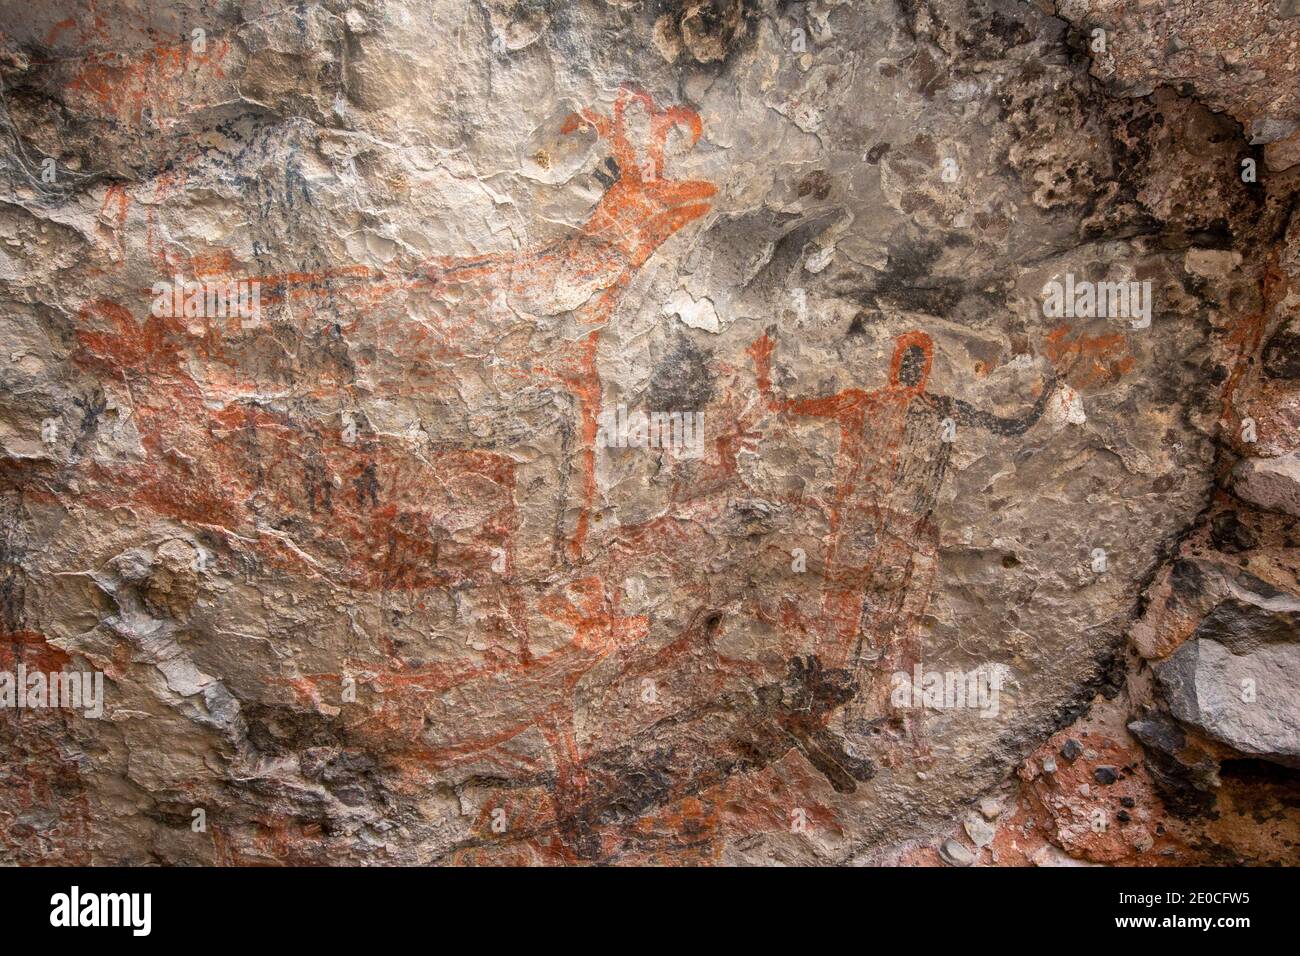 Pictogrammes d'art rupestre du peuple Cochimi, Cueva del Raton, site classé au patrimoine mondial de l'UNESCO, Sierra de San Francisco, Baja California sur, Mexique Banque D'Images